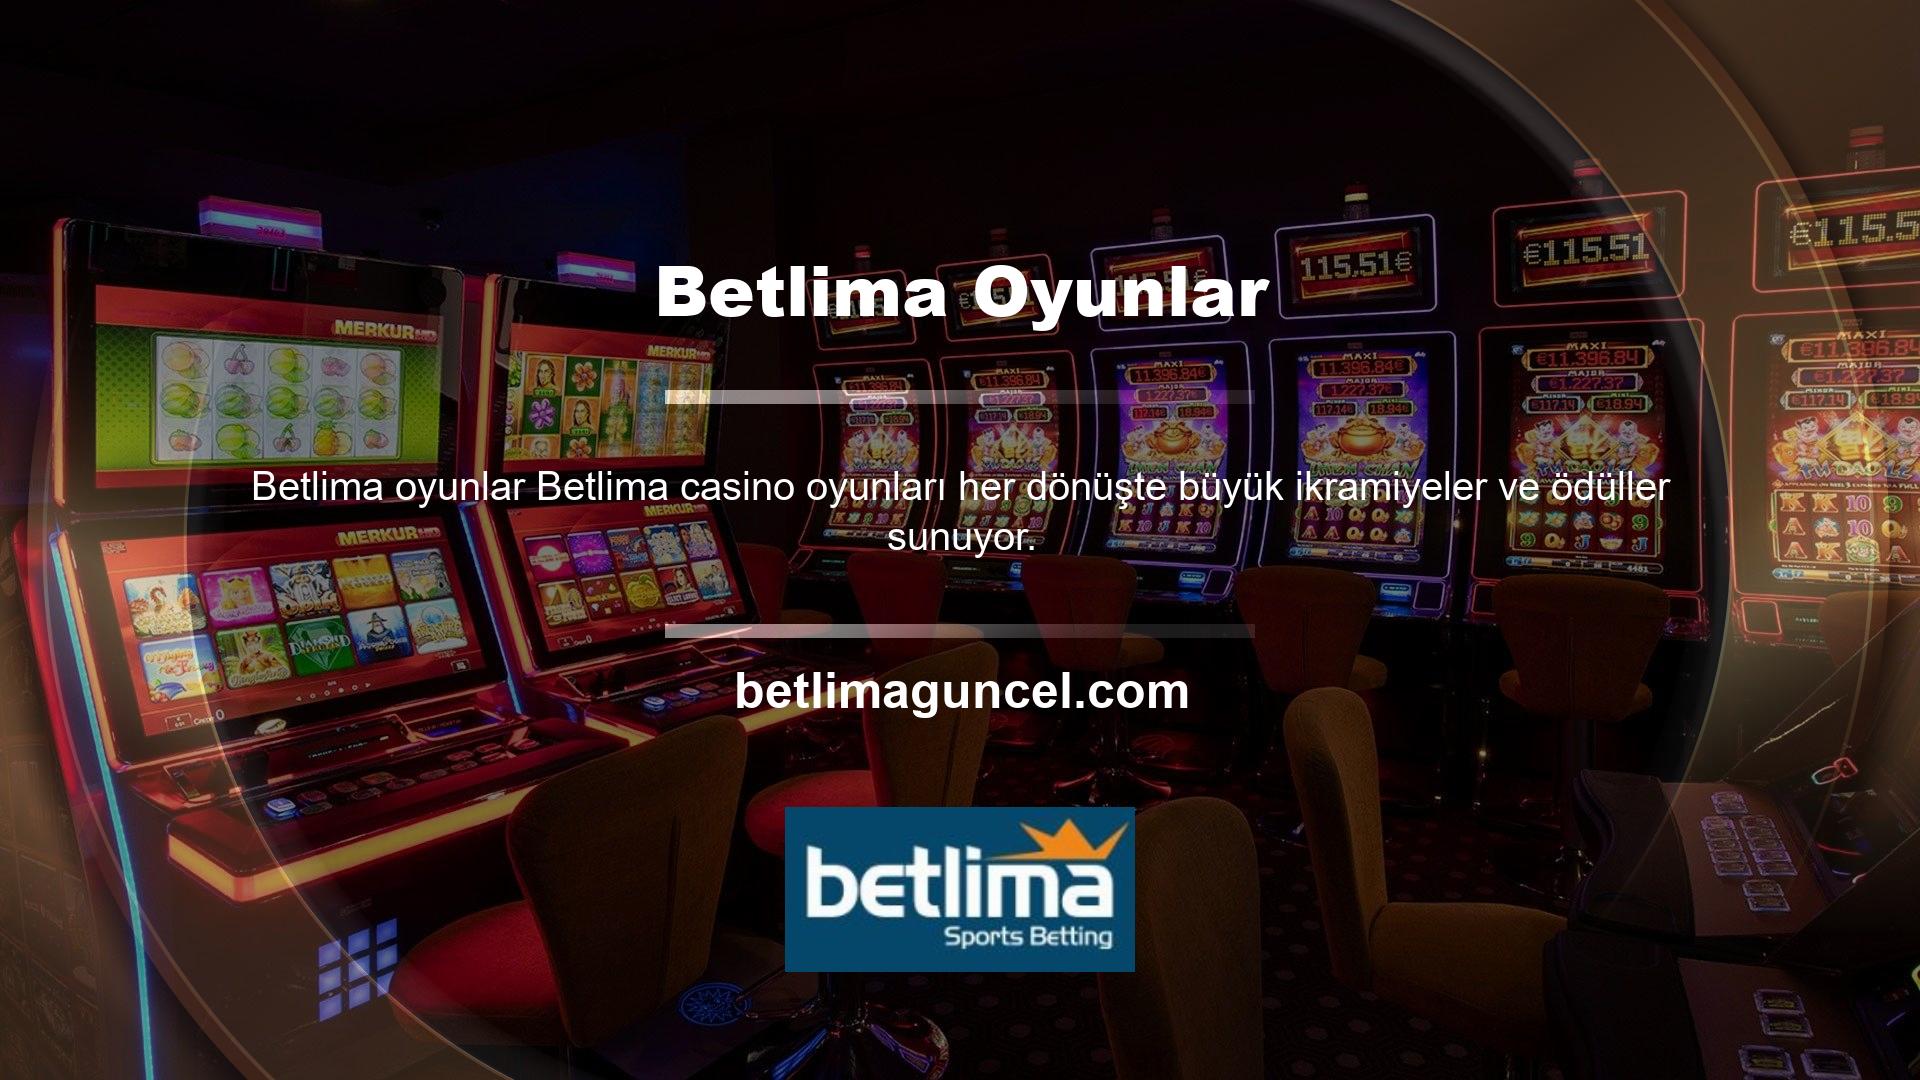 Betlima, üyelerin diledikleri zaman ulaşabilecekleri canlı destek hizmetleri bölümü sunan canlı bir casino sitesidir